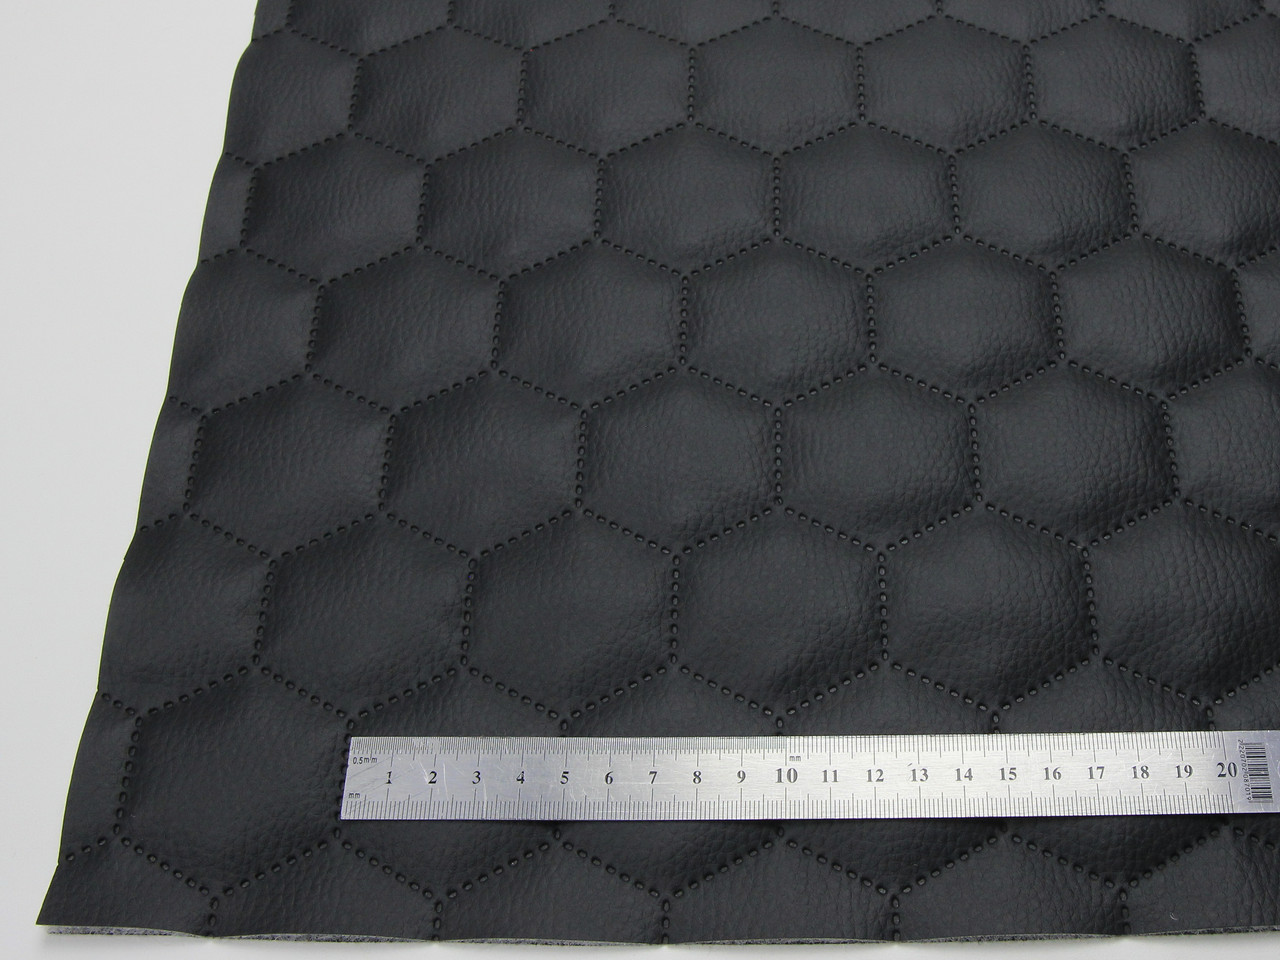 Кожзам термостёганый черный "Соты" дублированный синтепоном 3мм и флизелином, ширина 1,40м детальная фотка